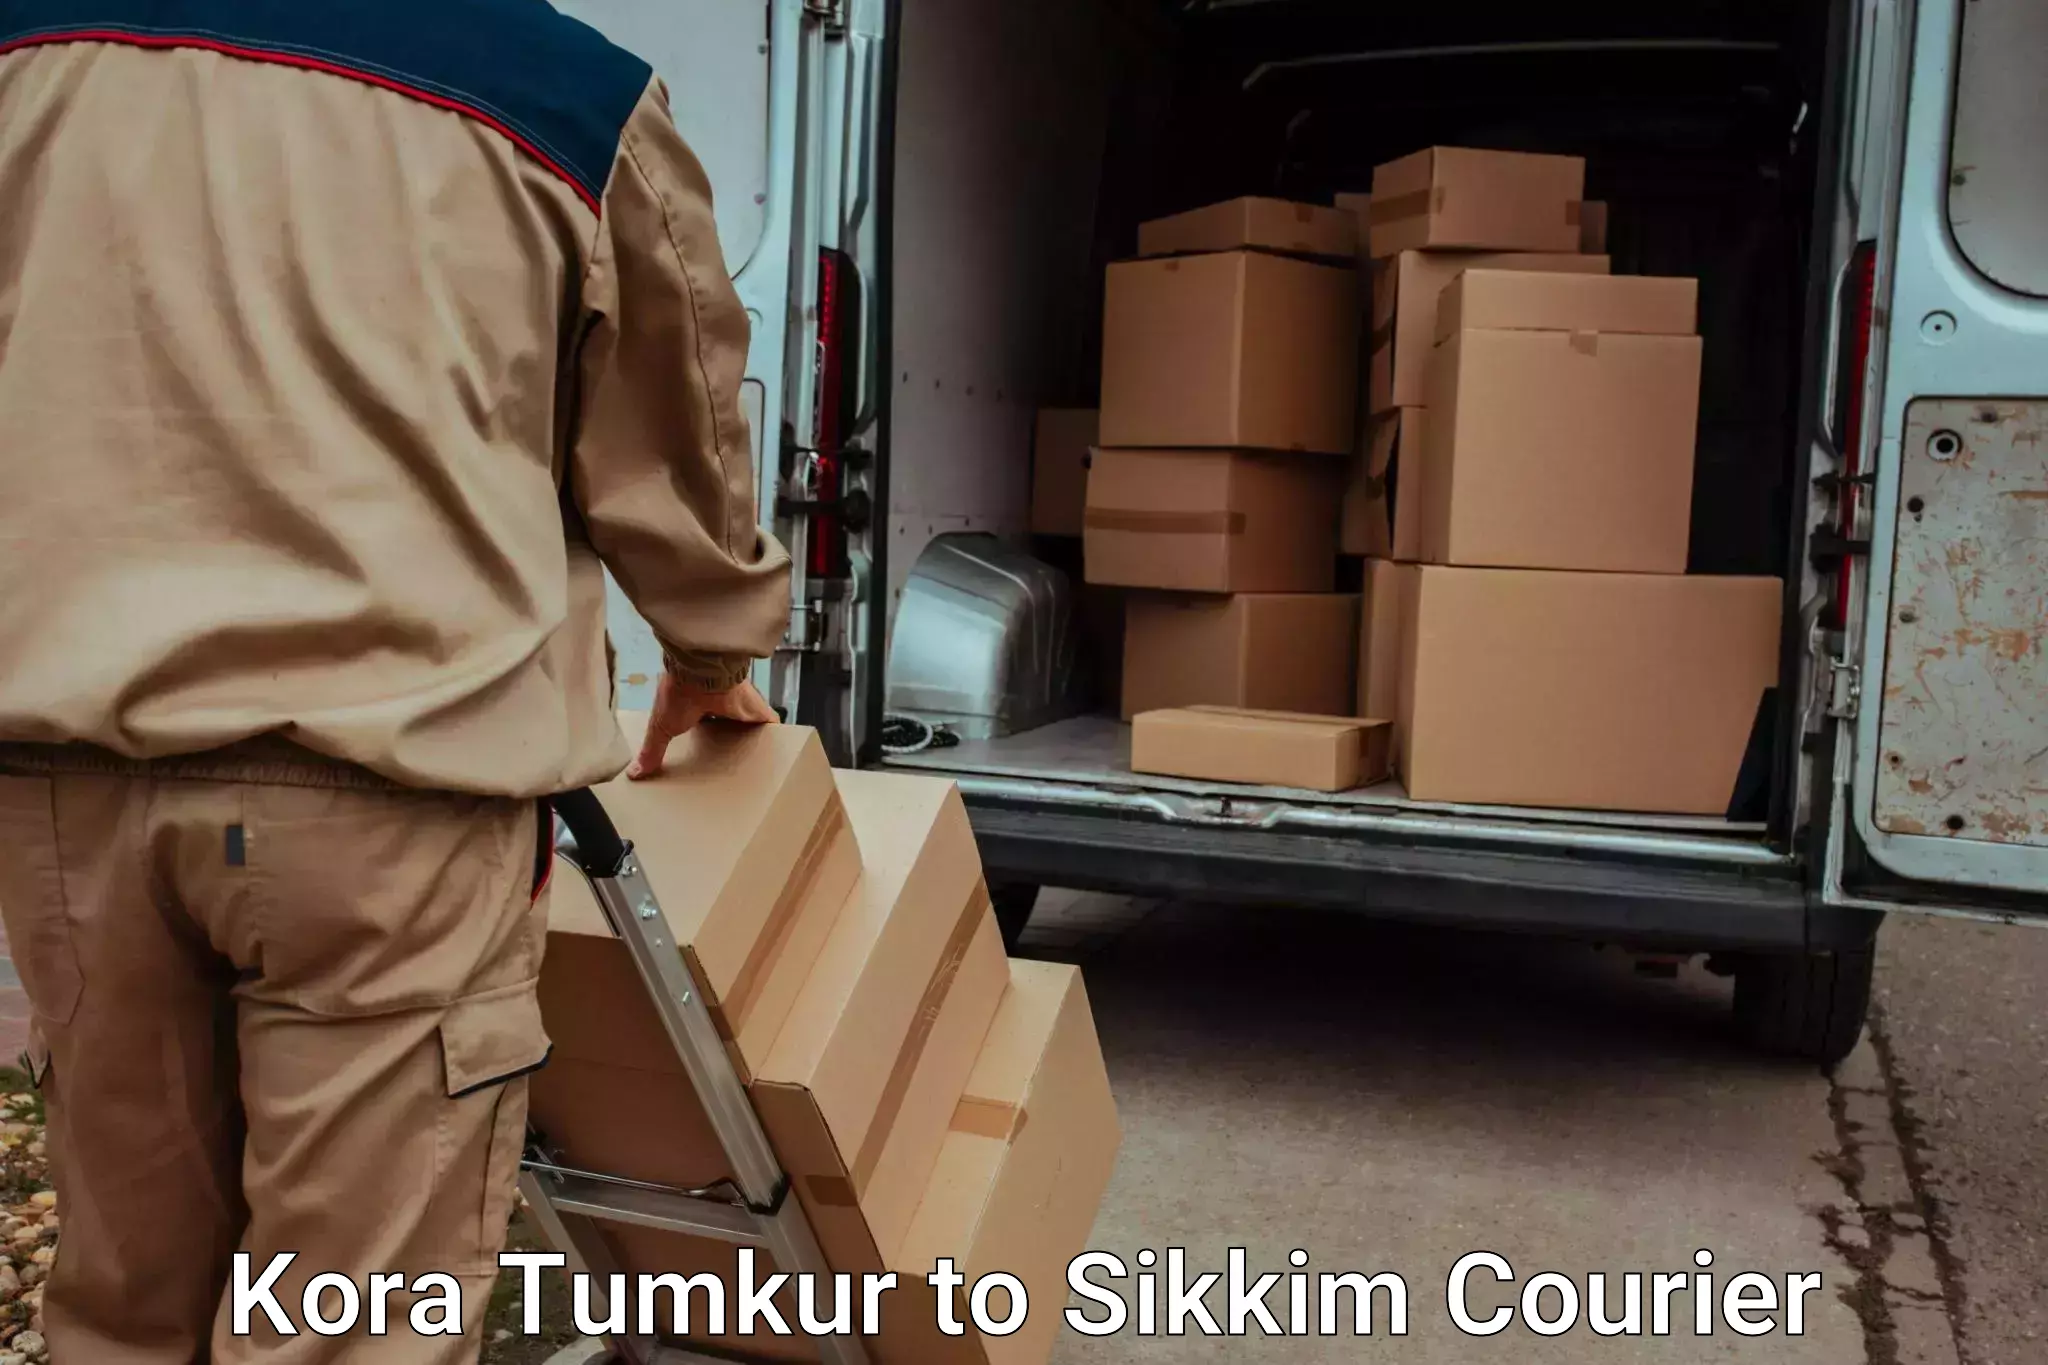 Luggage transit service Kora Tumkur to North Sikkim